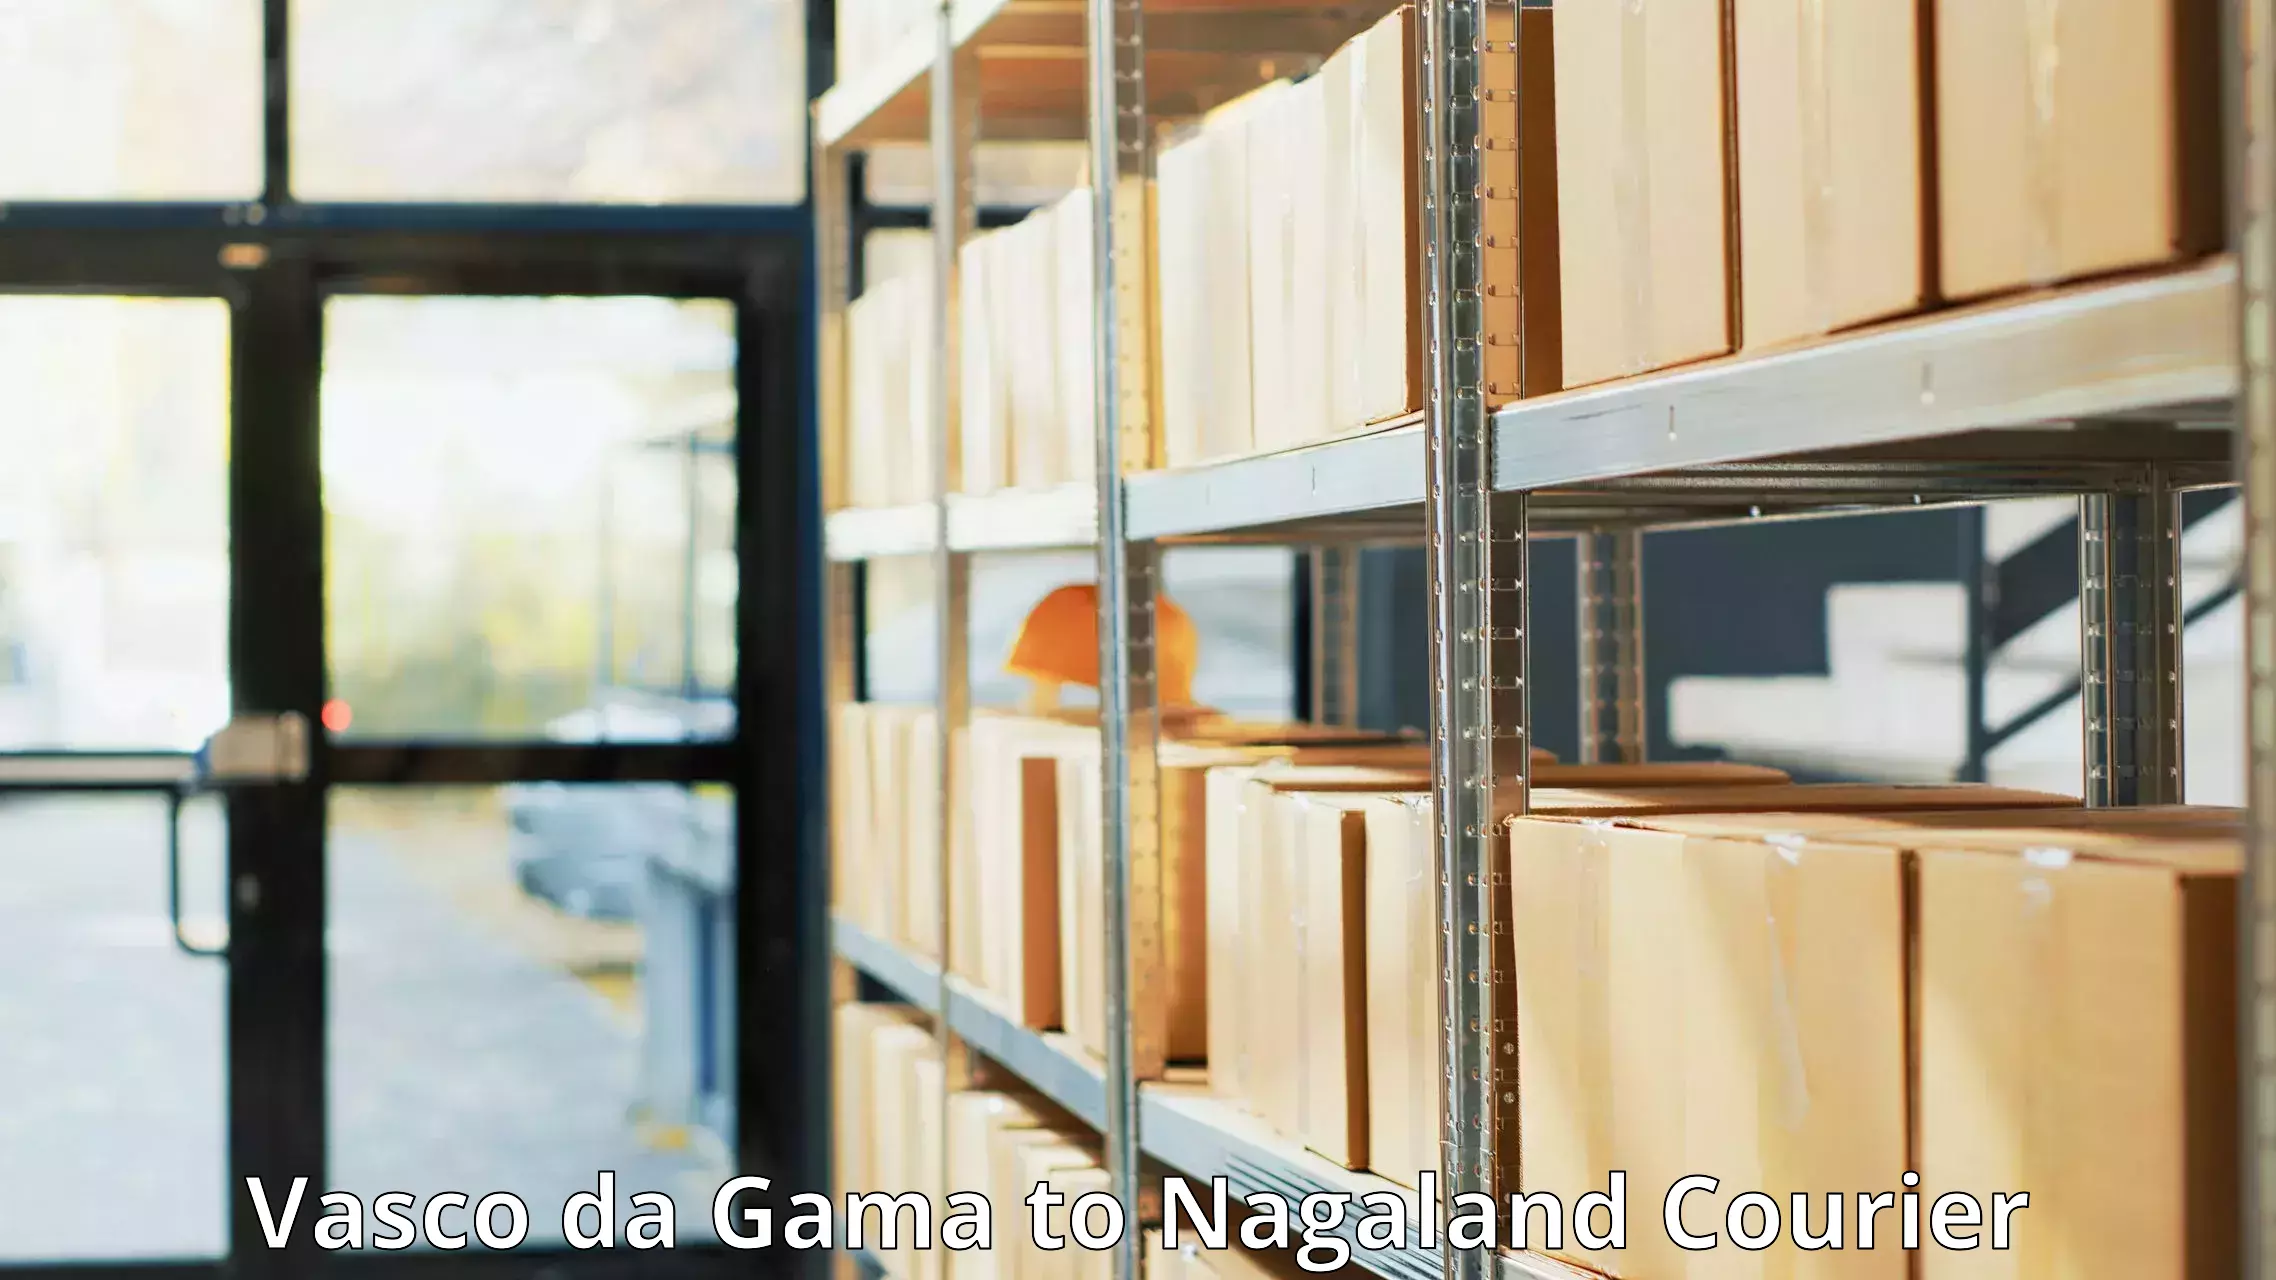 Premium courier solutions Vasco da Gama to Tuensang